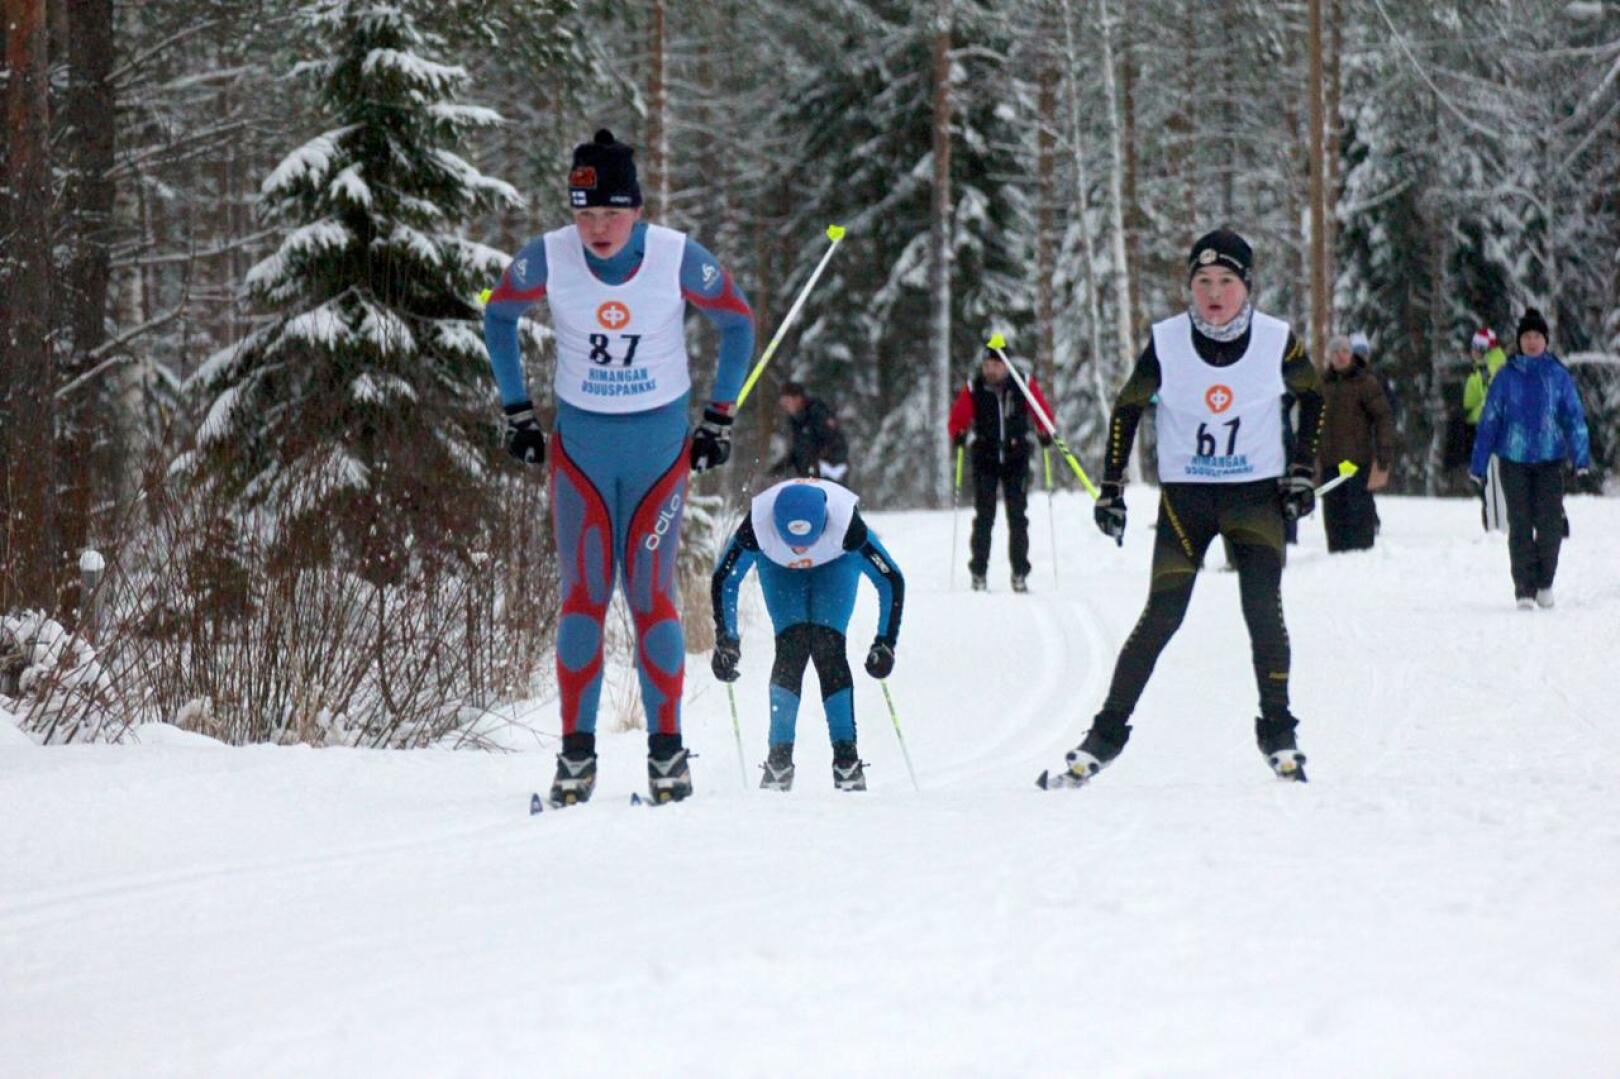 Himangalla hiihdetään K-P Cuppia lauantaina. Kuva HU:n kansallisista vuodelta 2015. Hiihtämässä HU:n Kristian Hakala ja Jaakko Mattila sekä Uran Miika Mutka.